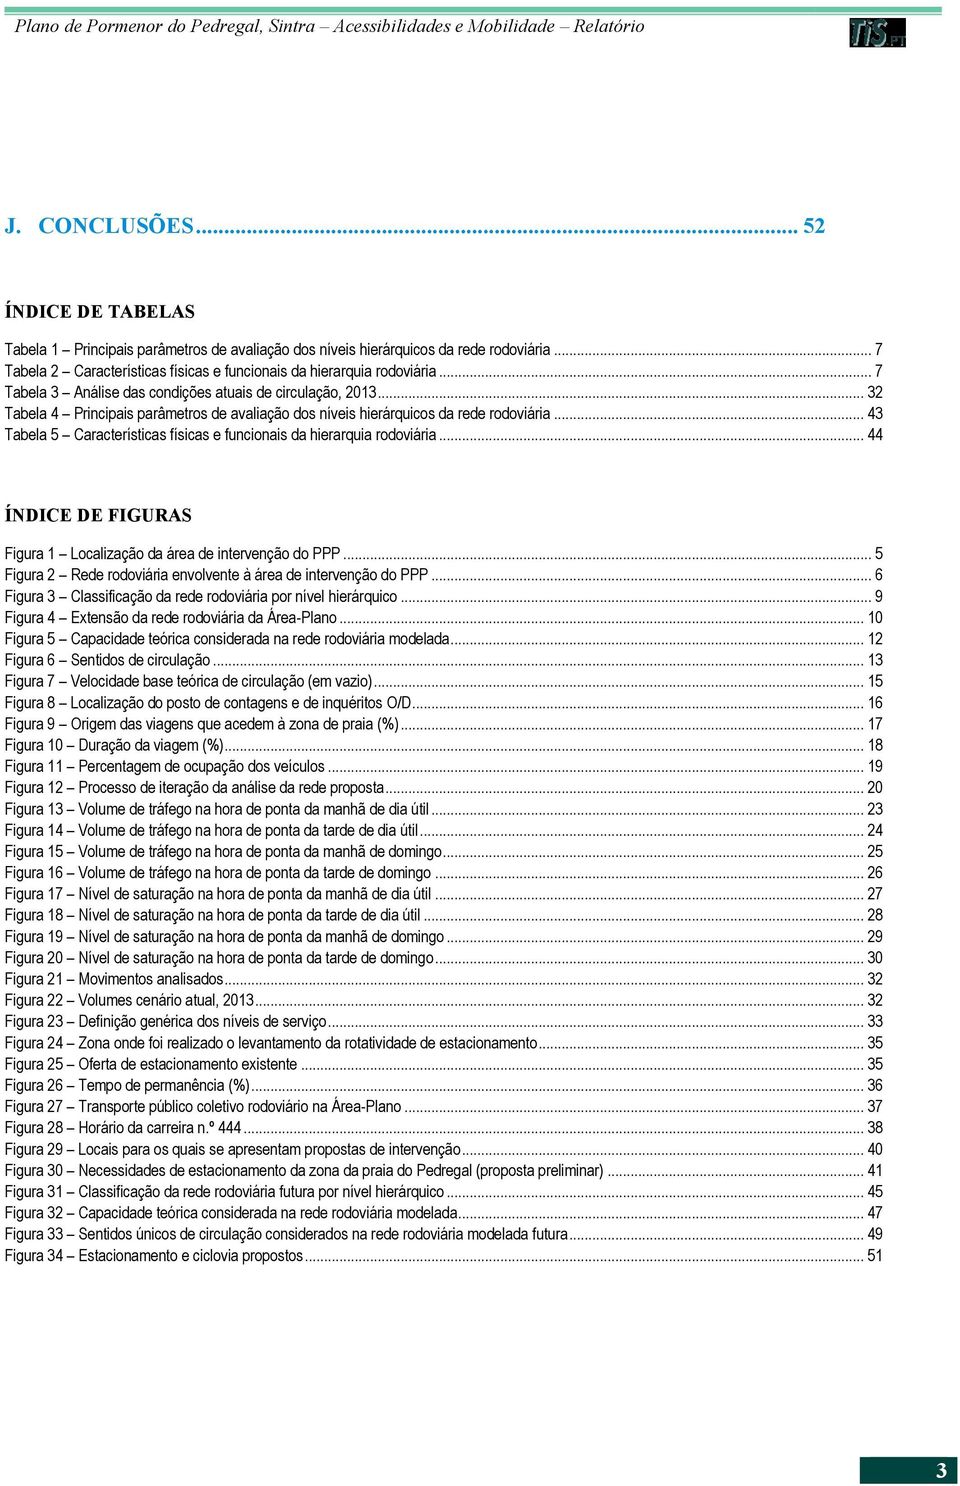 .. 43 Tabela 5 Características físicas e funcionais da hierarquia rodoviária... 44 ÍNDICE DE FIGURAS Figura 1 Localização da área de intervenção do PPP.